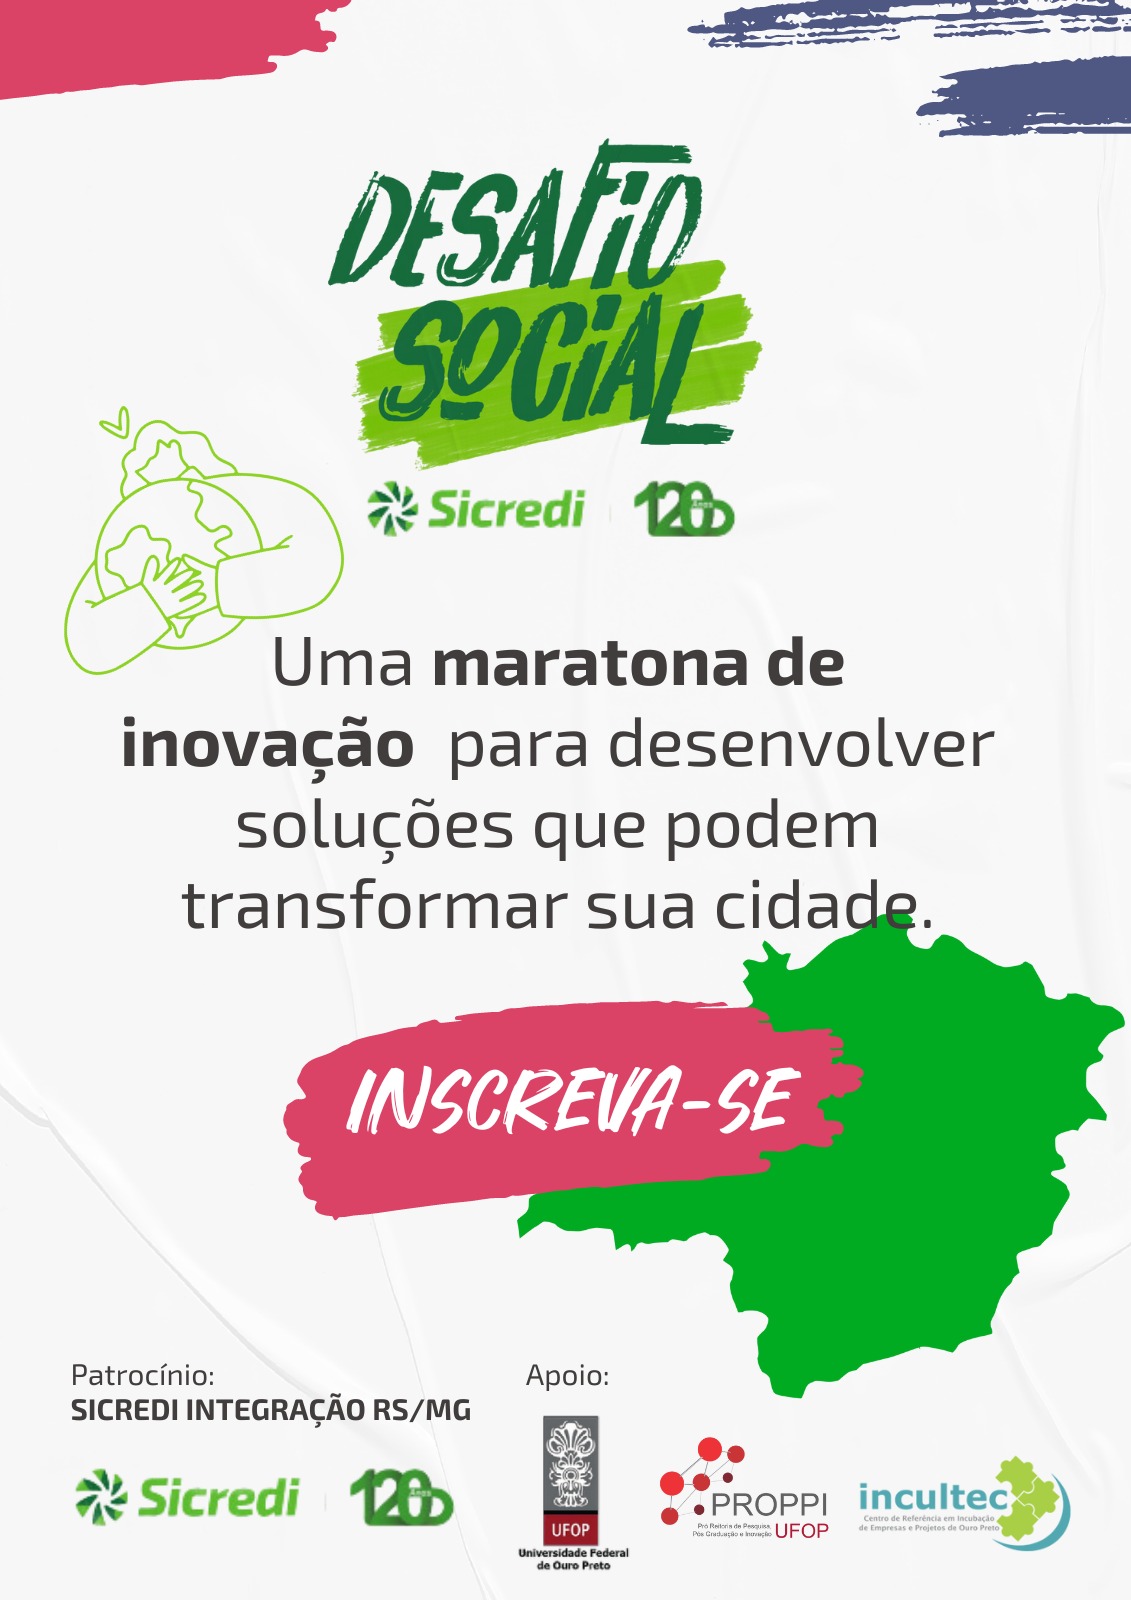 Banner de promoção do evento Desafio Social.